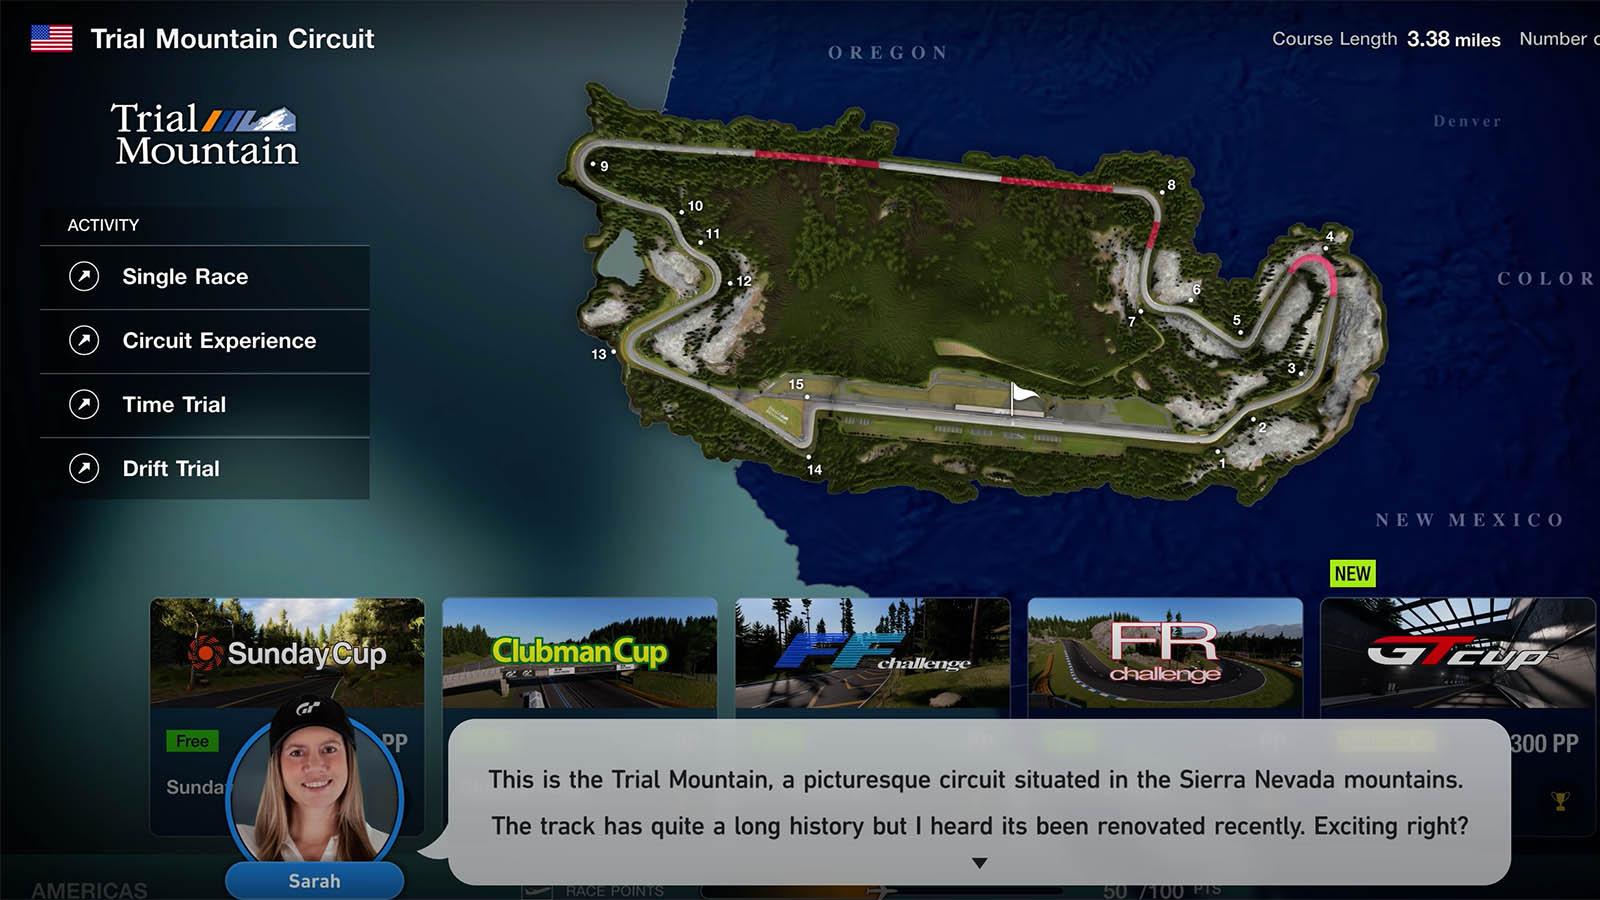 Gran Turismo 6 vs Gran Turismo 7 Trial Mountain Early Graphics Comparison 